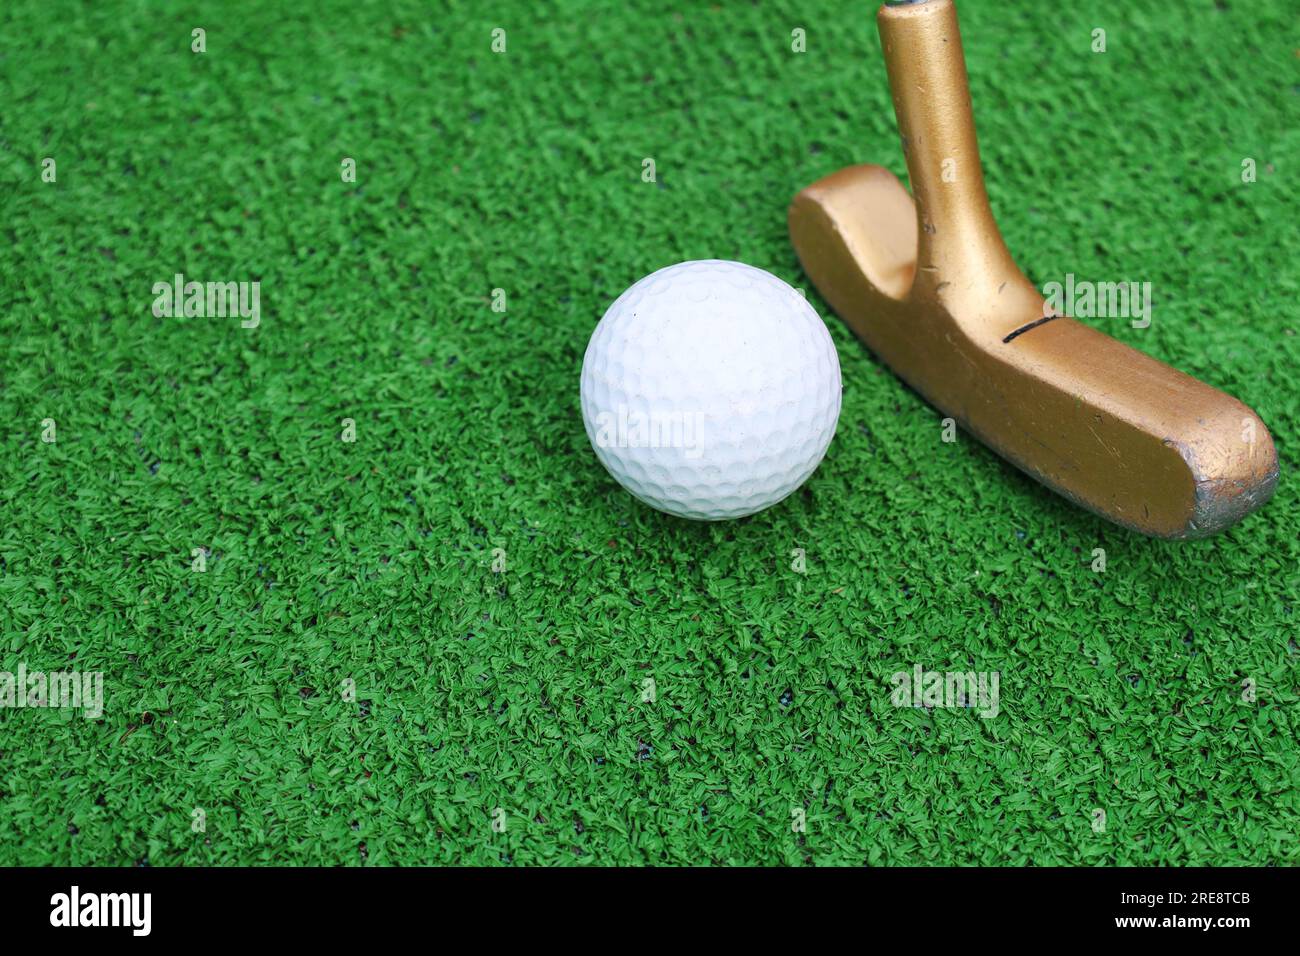 Parcours de mini-golf, mini-balle de golf en gros plan. Gazon artificiel vert sur le parcours de mini-golf. Banque D'Images